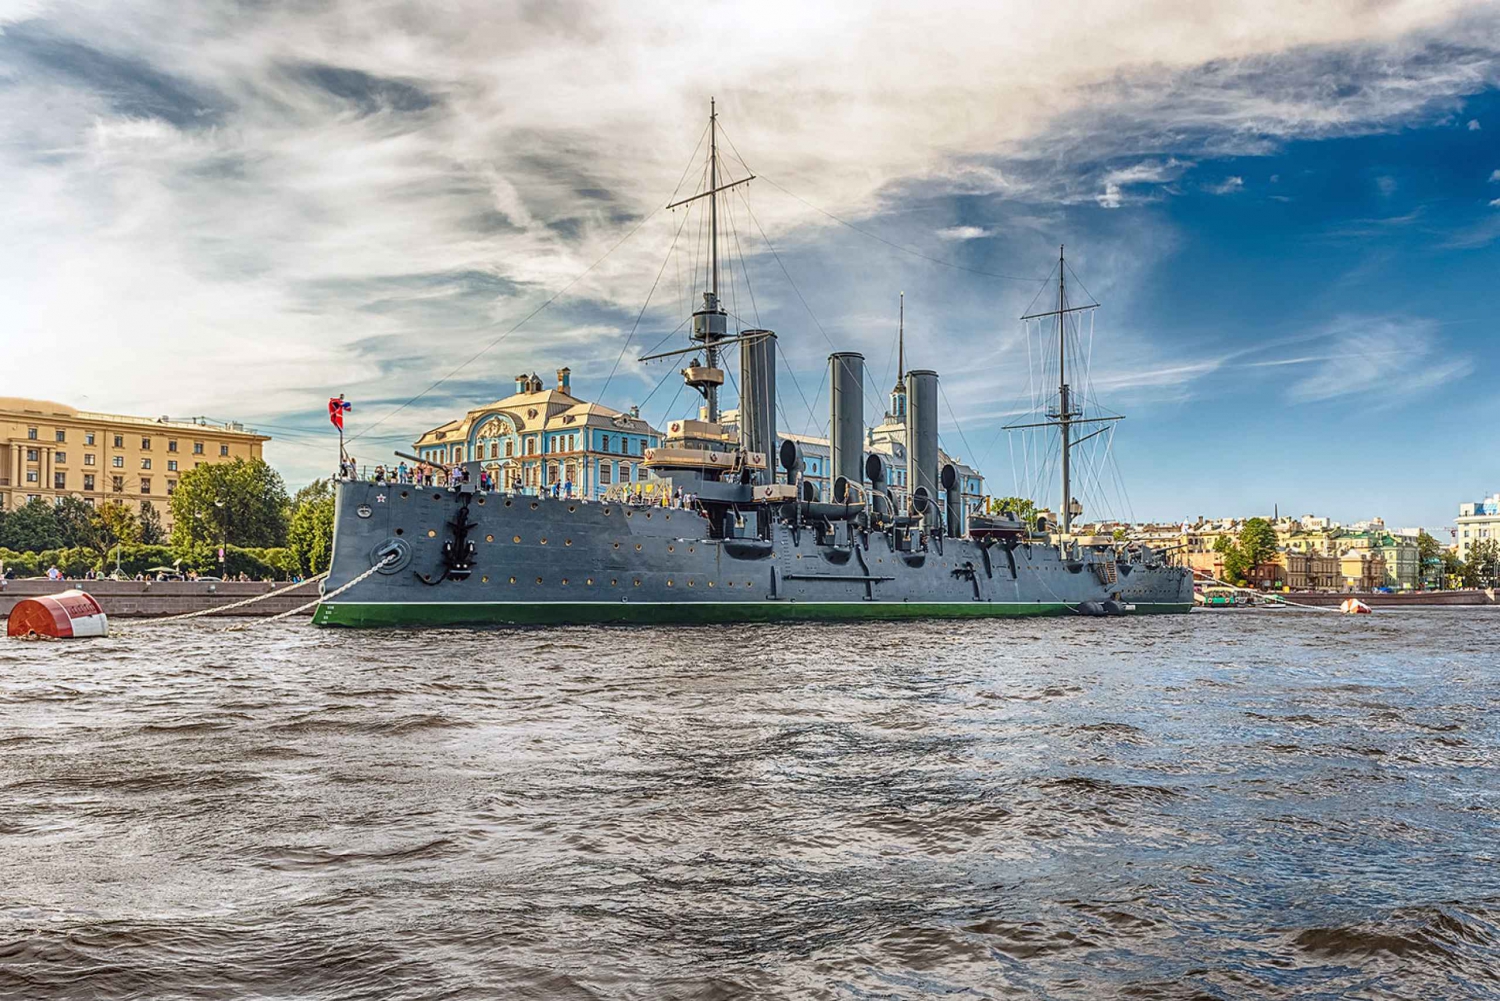 St. Petersburg: Cruiser Aurora Entrance Ticket & Audio Guide